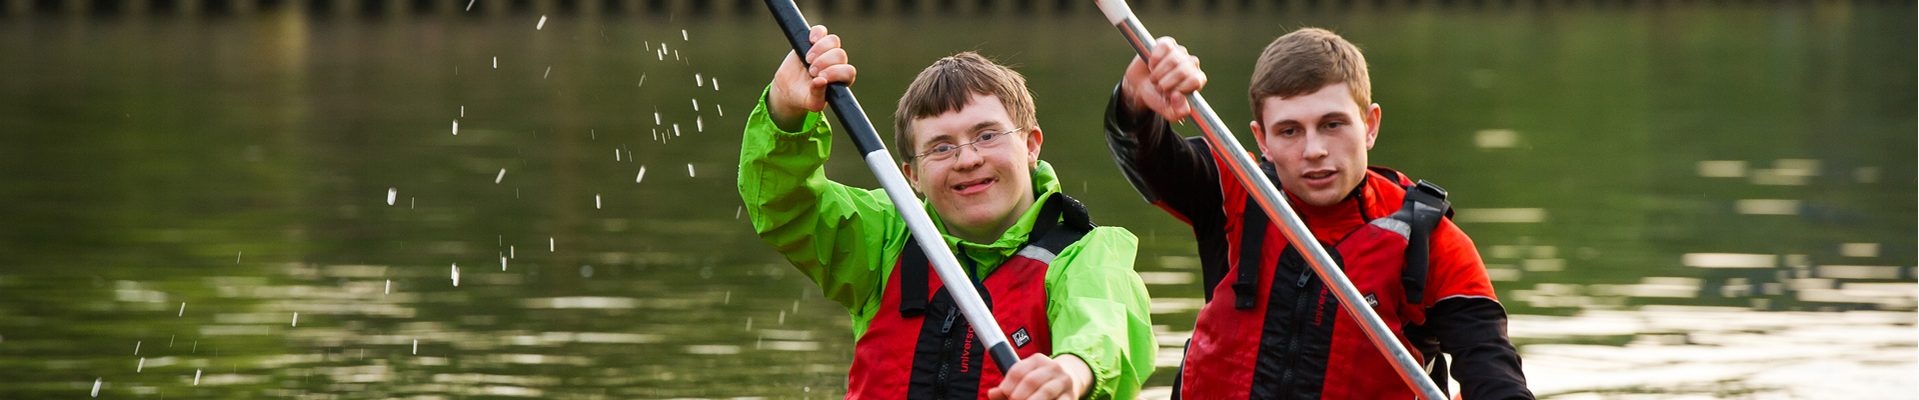 Headerbild Inklusion im Sport: Behinderter und Nicht-Behinderter paddeln gemeinsam in einem Boot